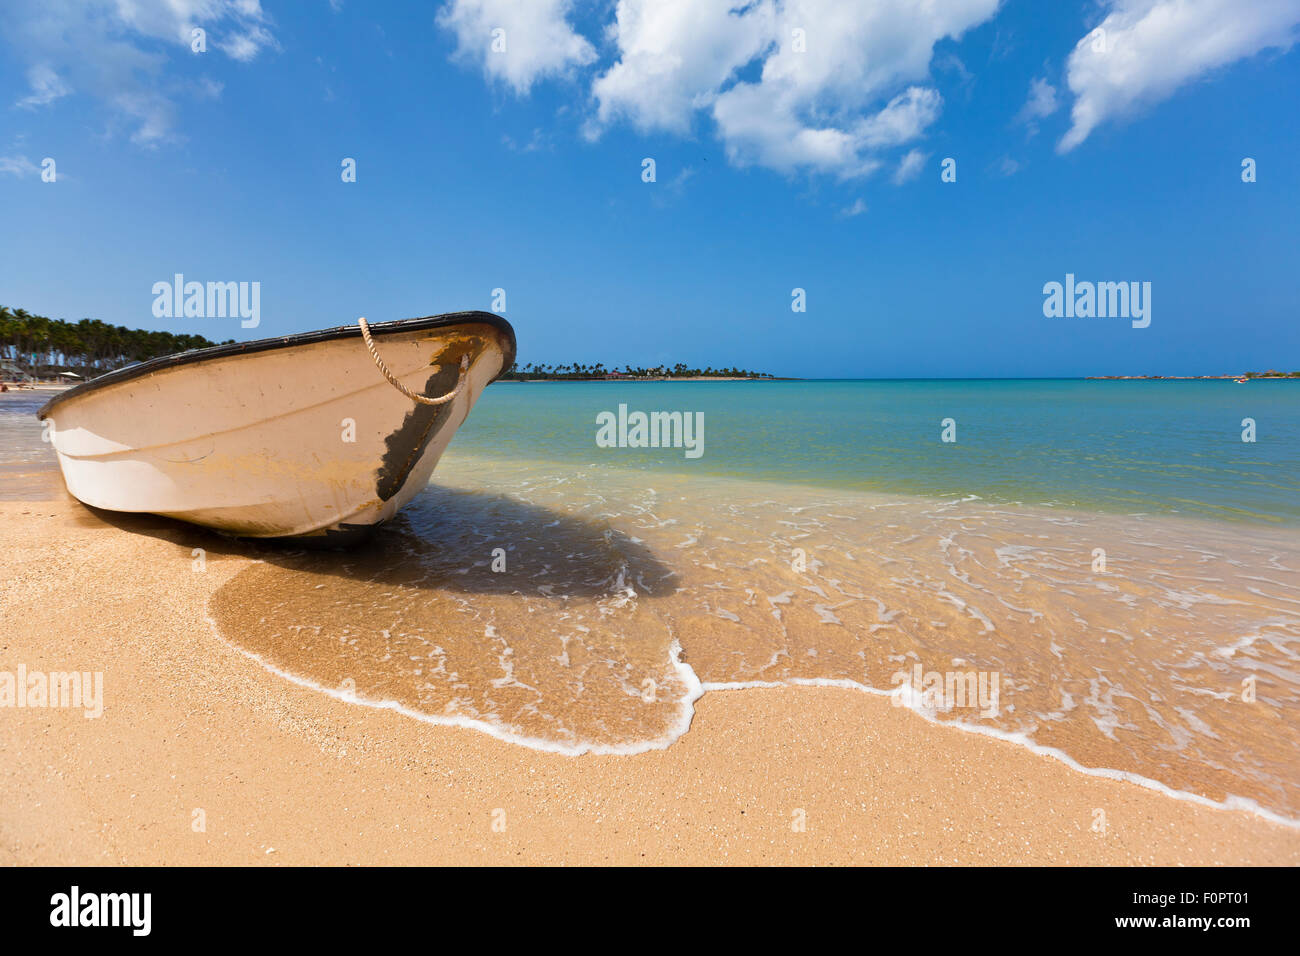 Ein Boot sitzen gestrandet auf Punta Cana an der Karibik mit strahlend blauen Wasser und Himmel strecken sich in den Horizont Stockfoto